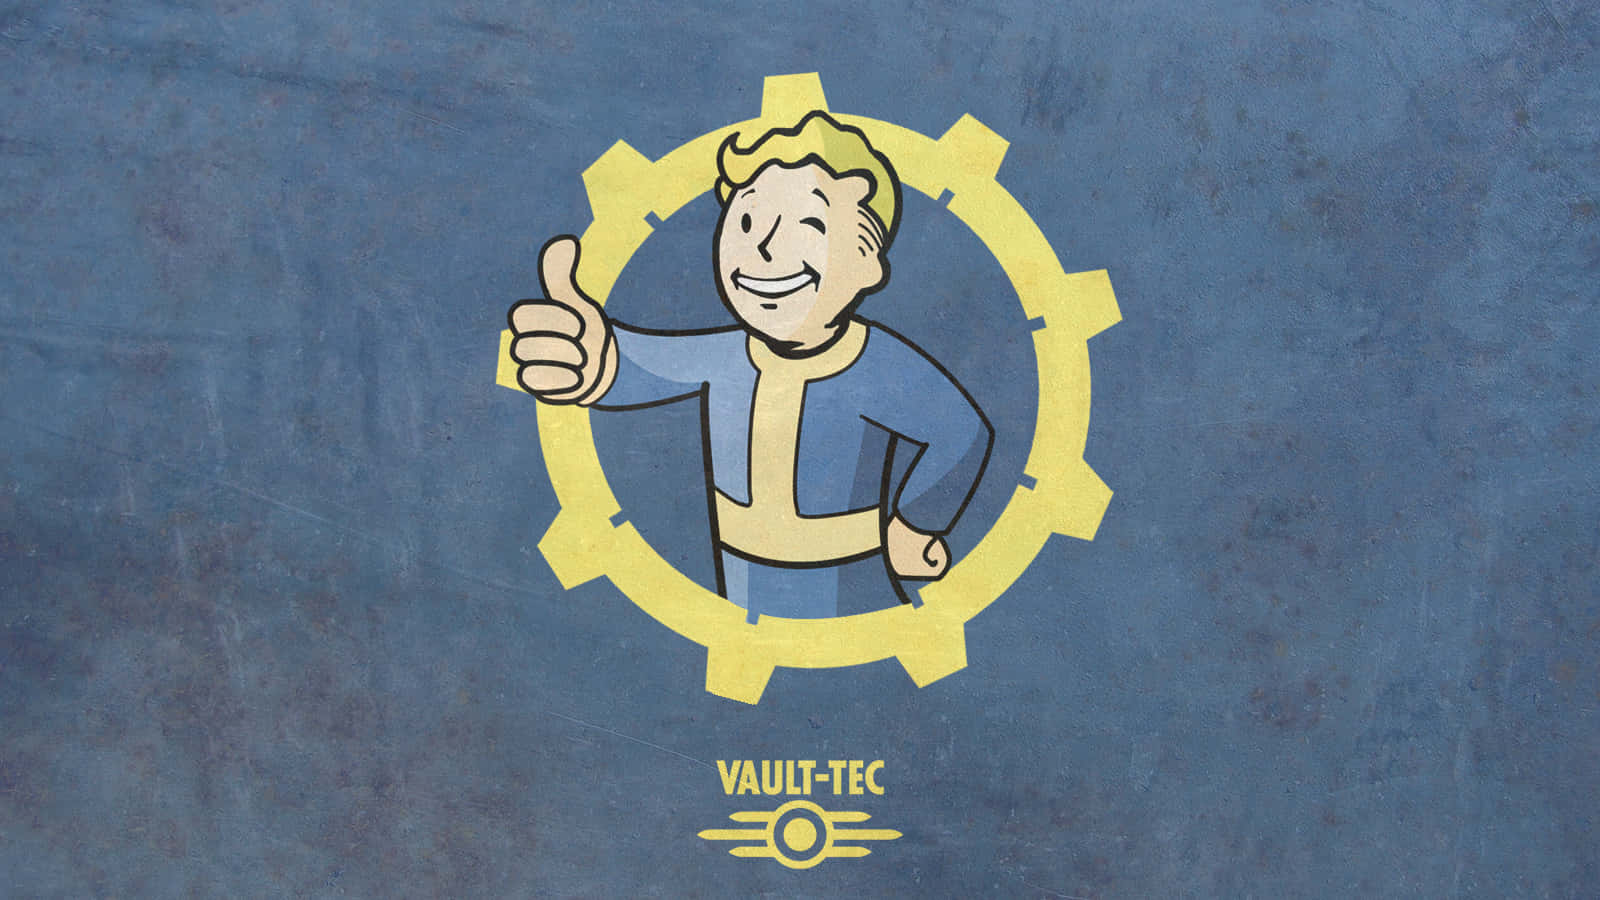 Vaultboy, Das Ikonische Maskottchen Des Fallout-videospiels. Wallpaper